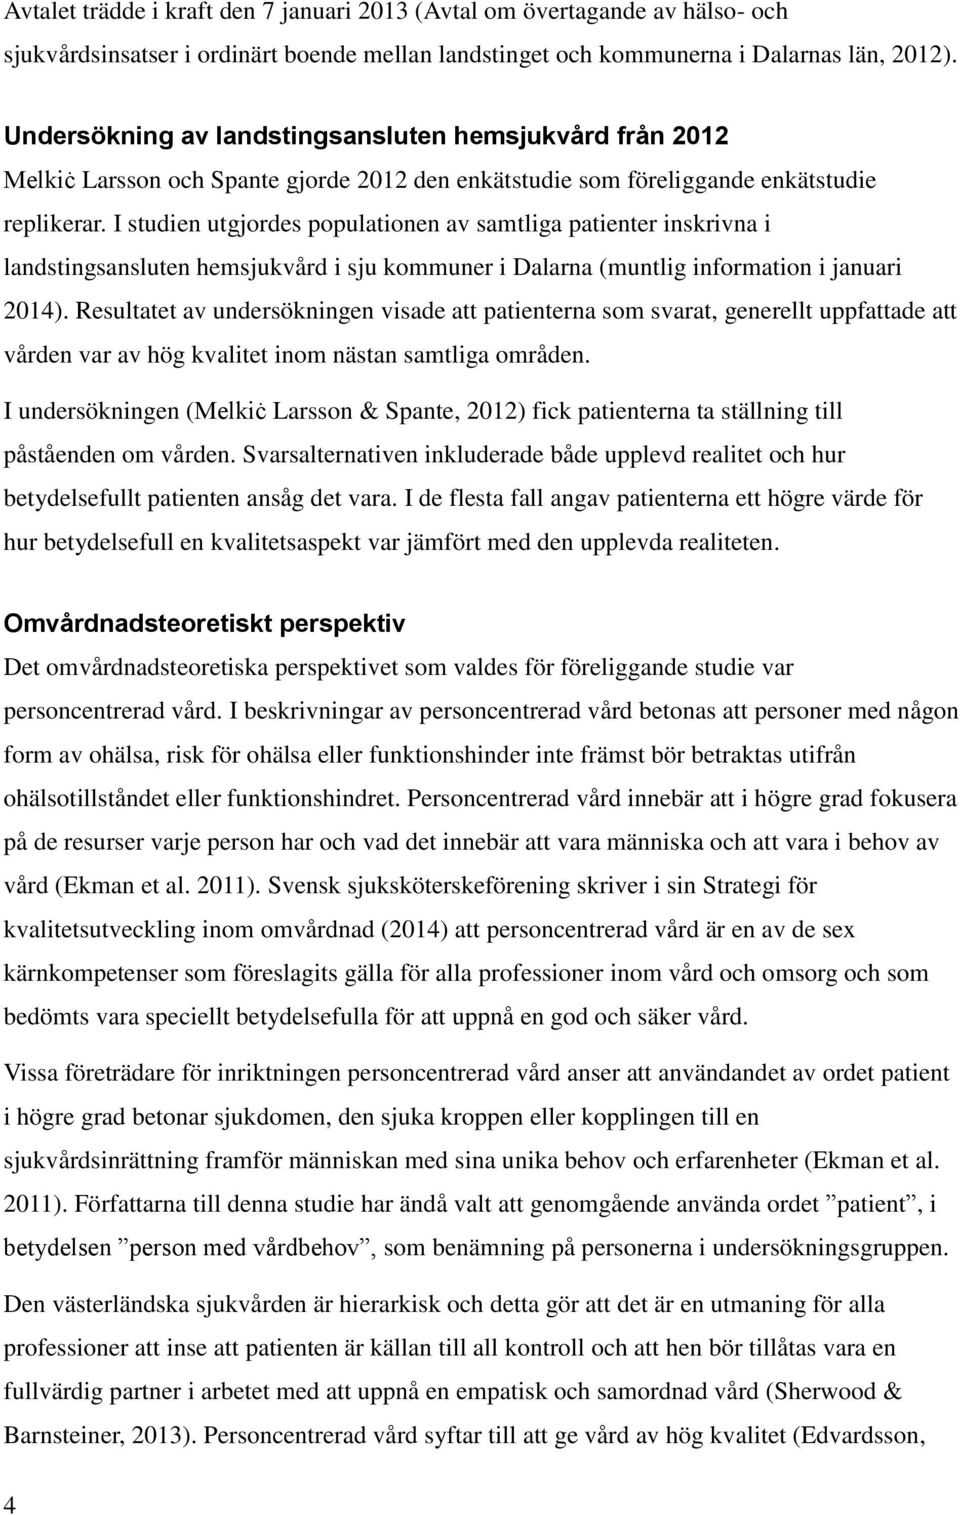 I studien utgjordes populationen av samtliga patienter inskrivna i landstingsansluten hemsjukvård i sju kommuner i Dalarna (muntlig information i januari 2014).